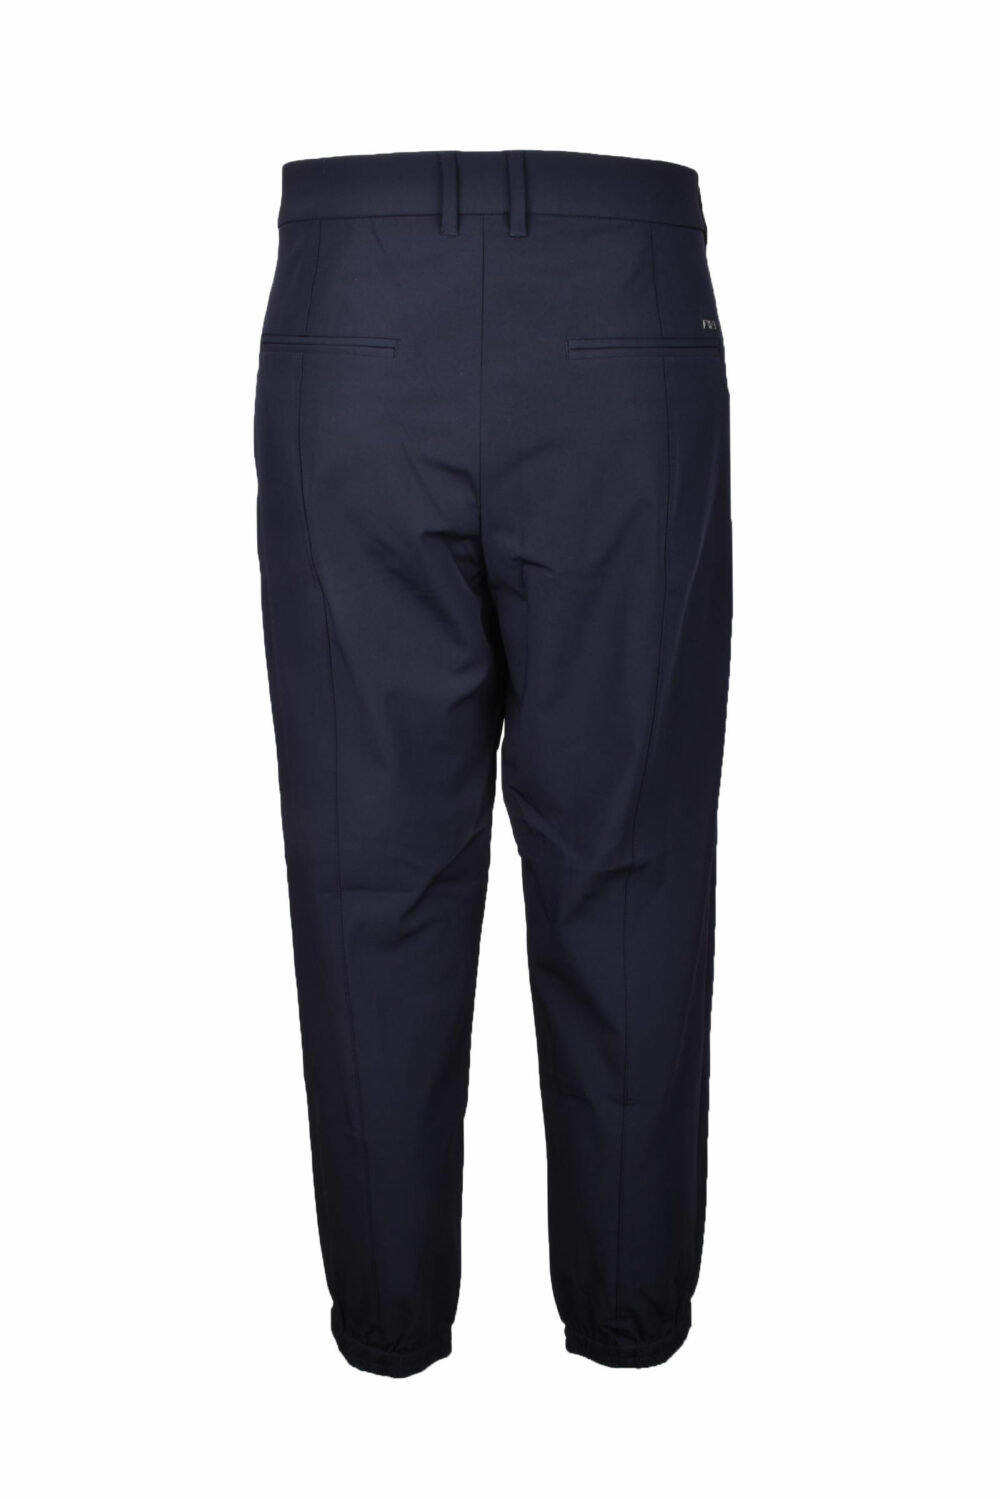 Pantaloni Emporio Armani Blu - Foto 2